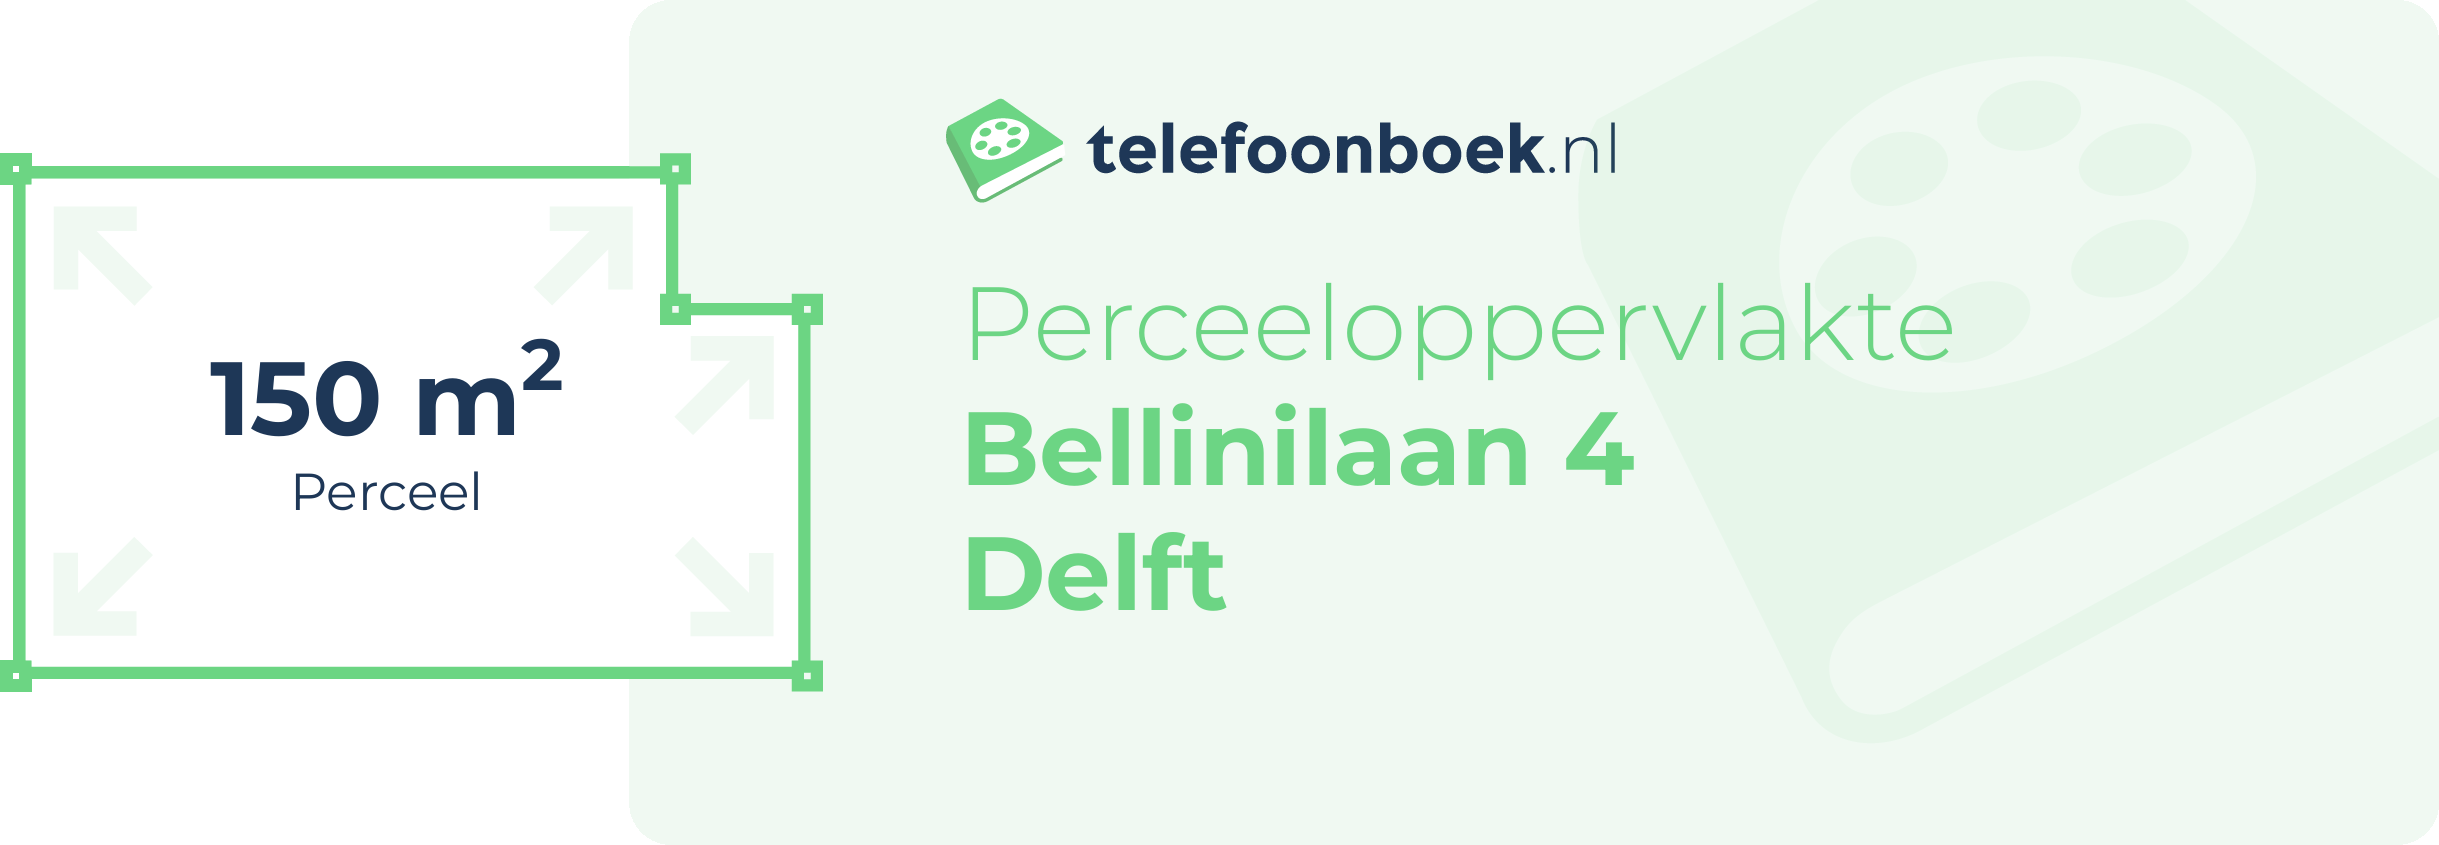 Perceeloppervlakte Bellinilaan 4 Delft